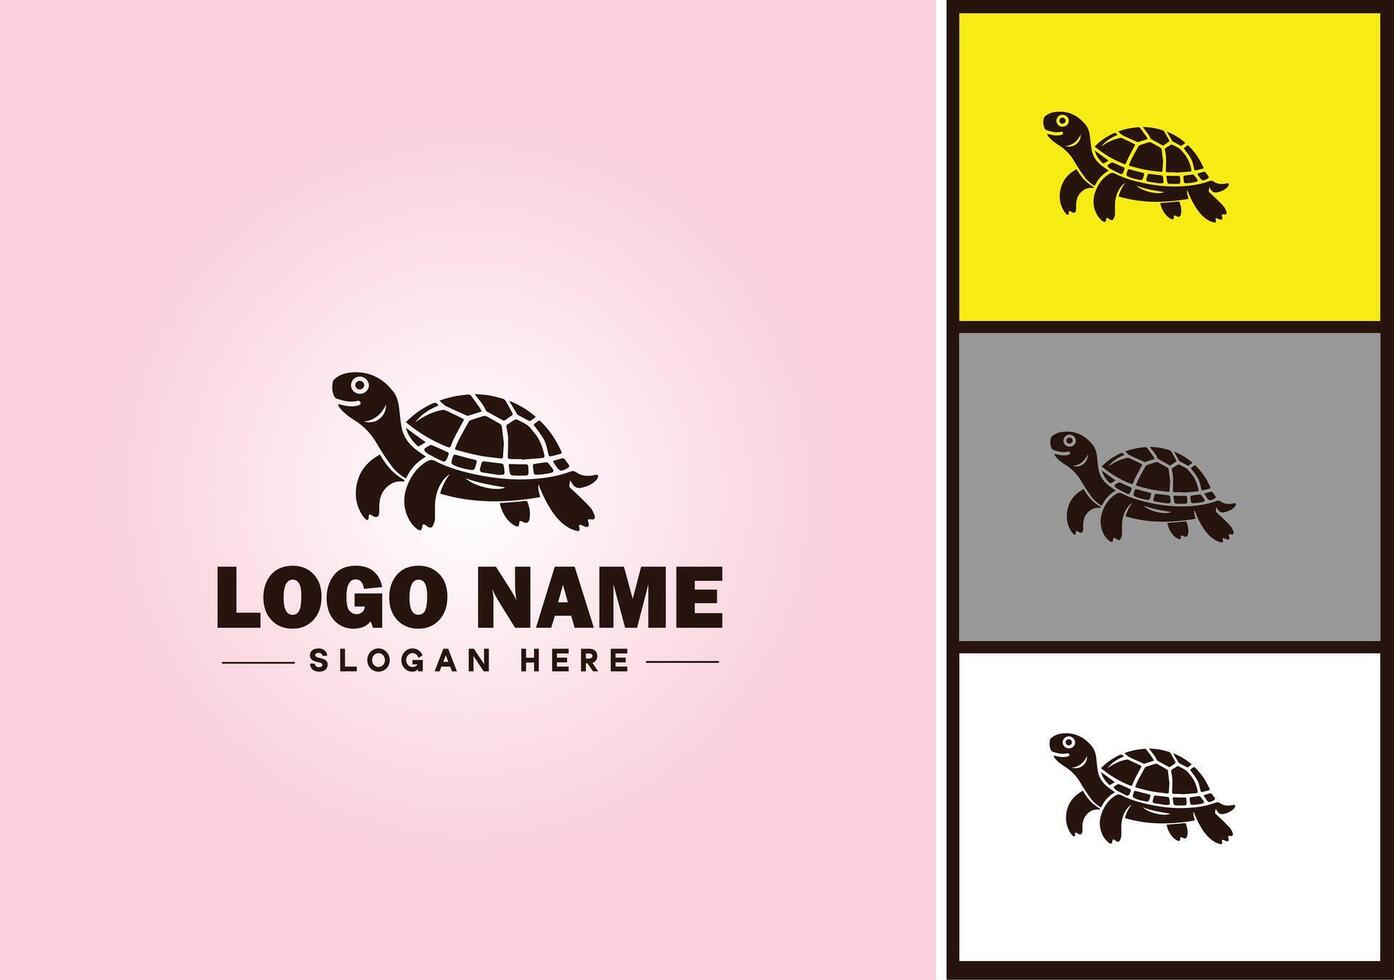 tortue logo vecteur art icône graphique pour entreprise marque tortue icône tortue logo modèle